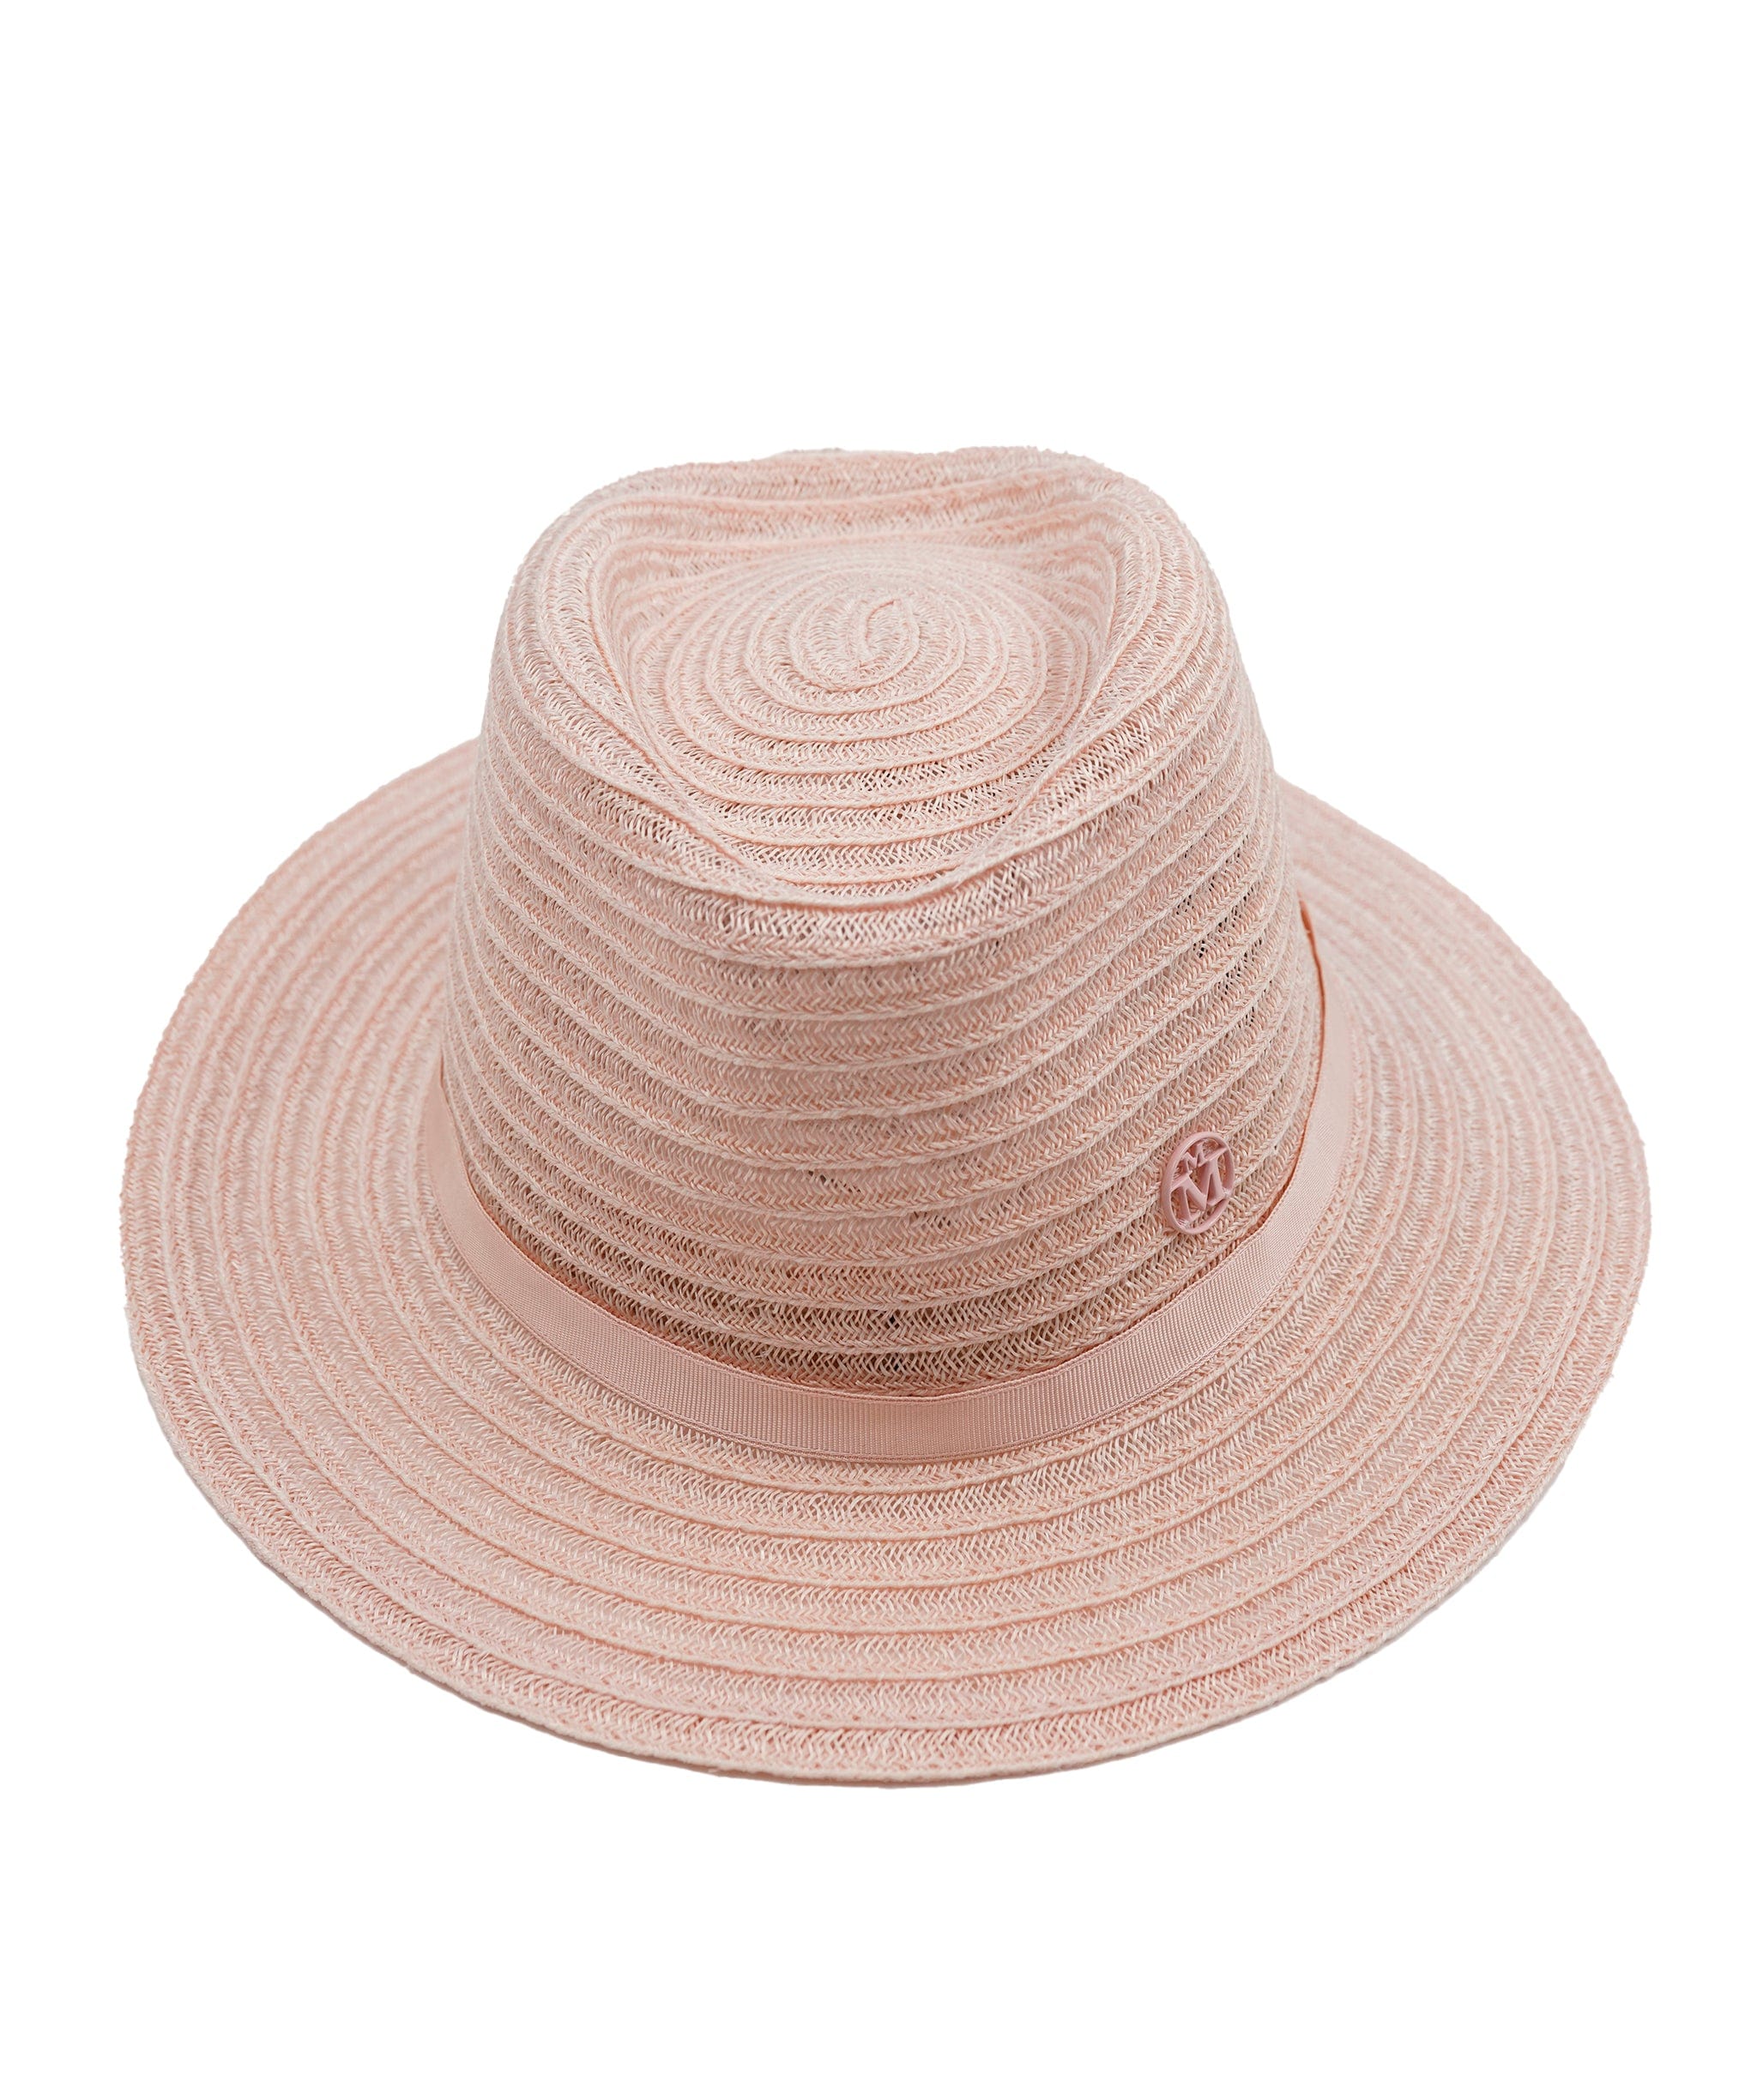 Maison Michel Maison Michel pink straw André hat - ASL5080